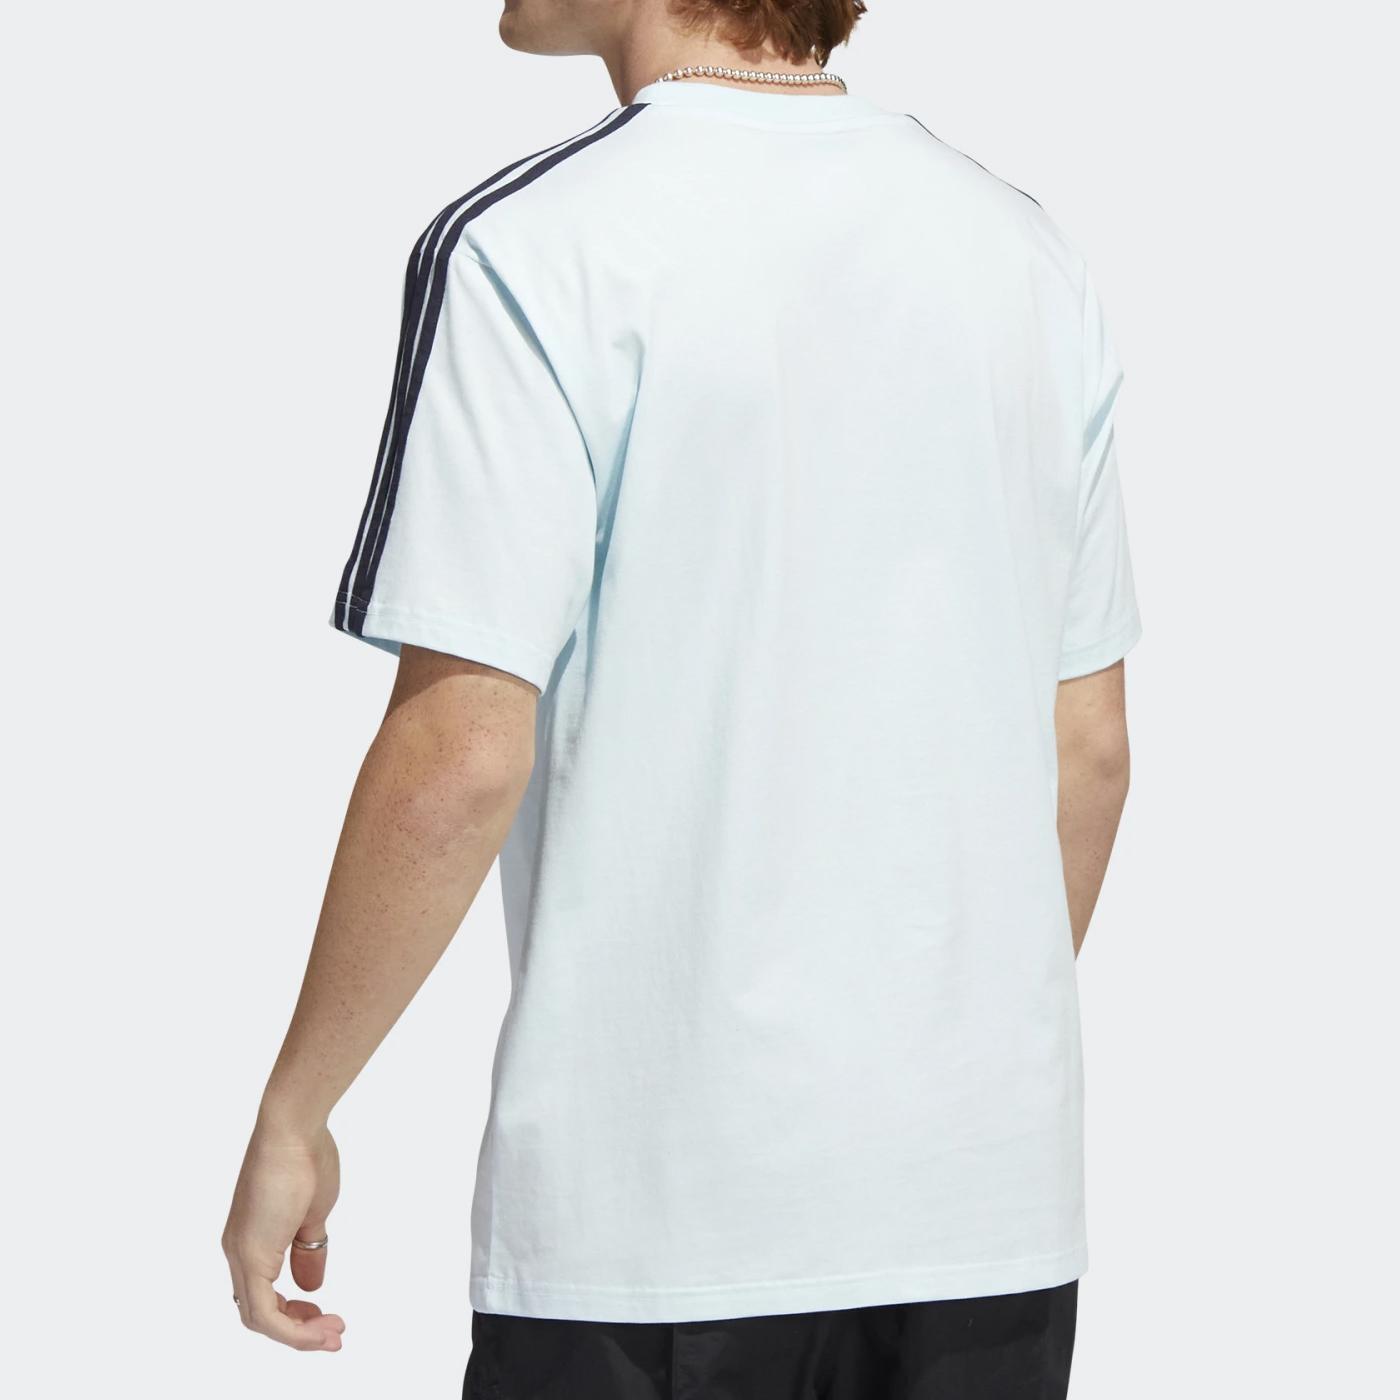 Adidas OAK 3 Stripe teealmblu/legin - Shop-Tetuan